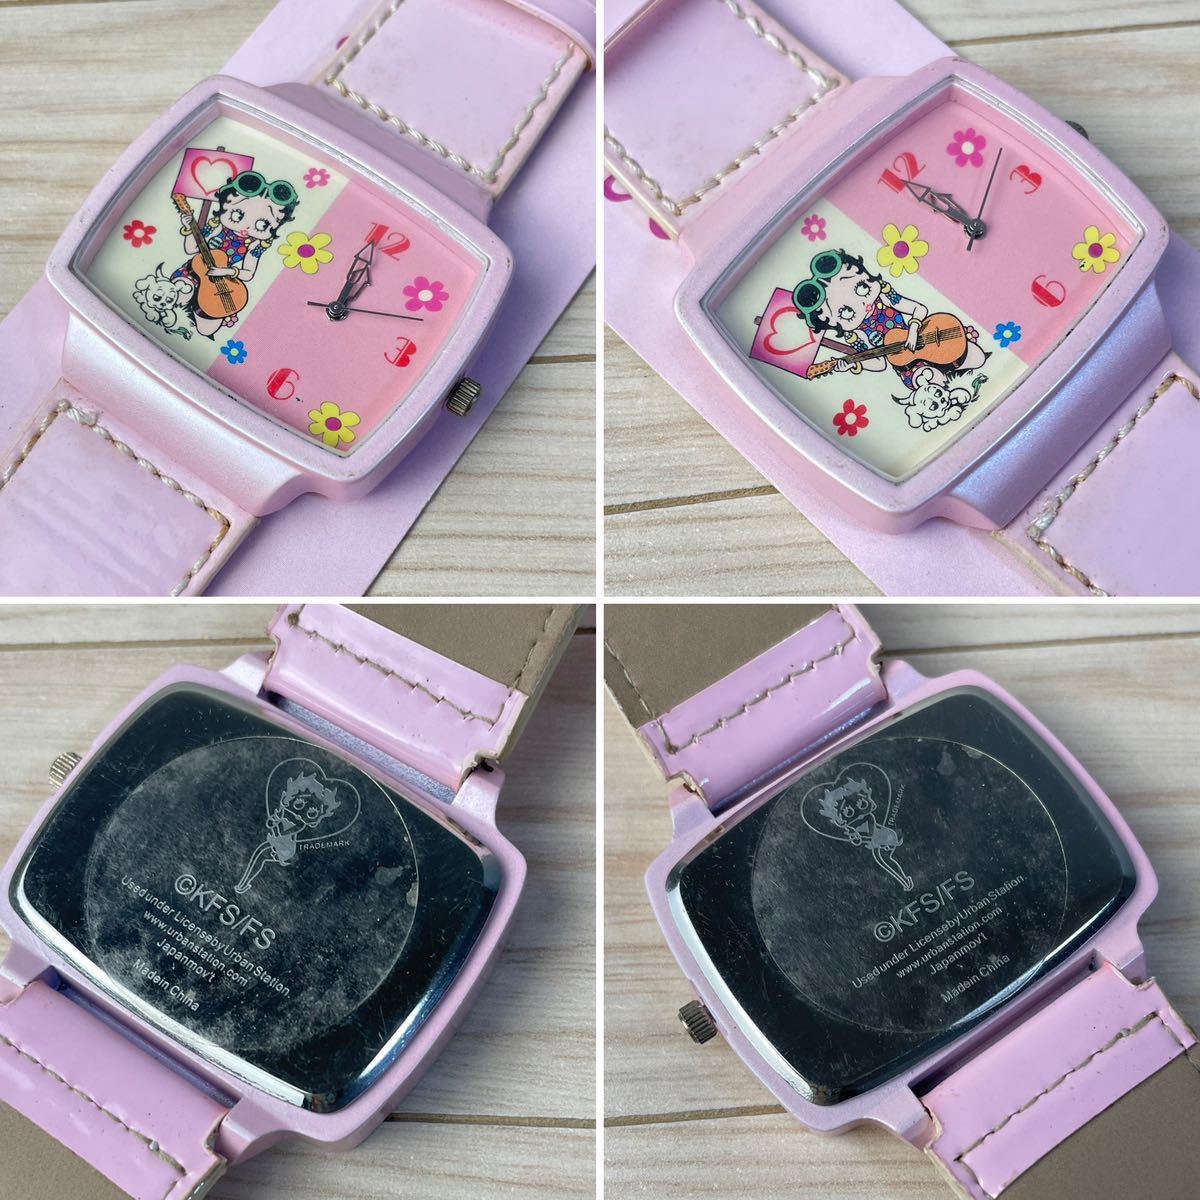 BettyBoopbetib-pbeti Chan wristwatch 3 hands wristwatch Vintage clock beti Chan present condition goods 